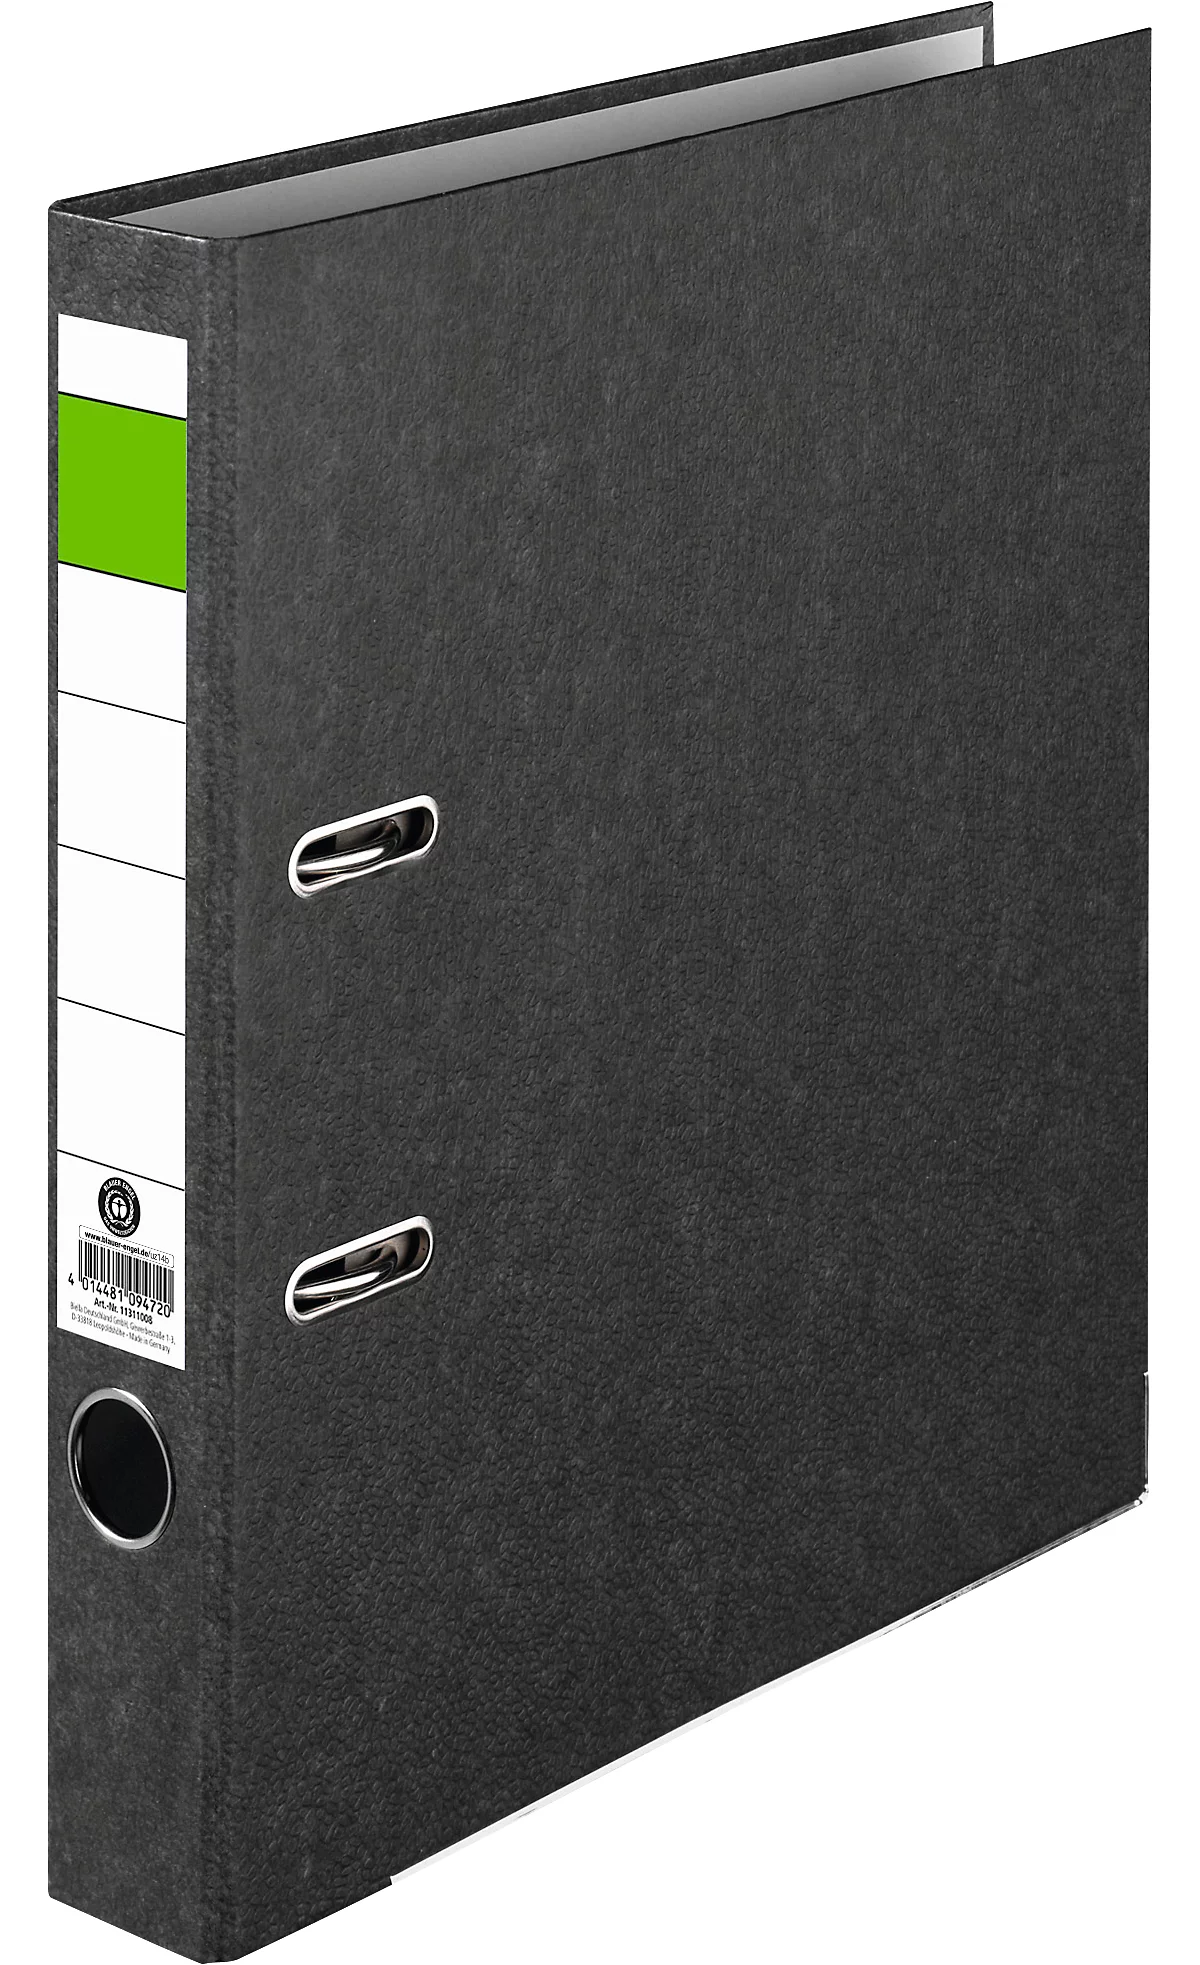 Carpeta barra verde, A4, ancho del lomo 50 mm, mecanismo de calidad, agujero de agarre y etiqueta trasera pegada, cartón duro reciclado negro jaspeado, 1 unidad.